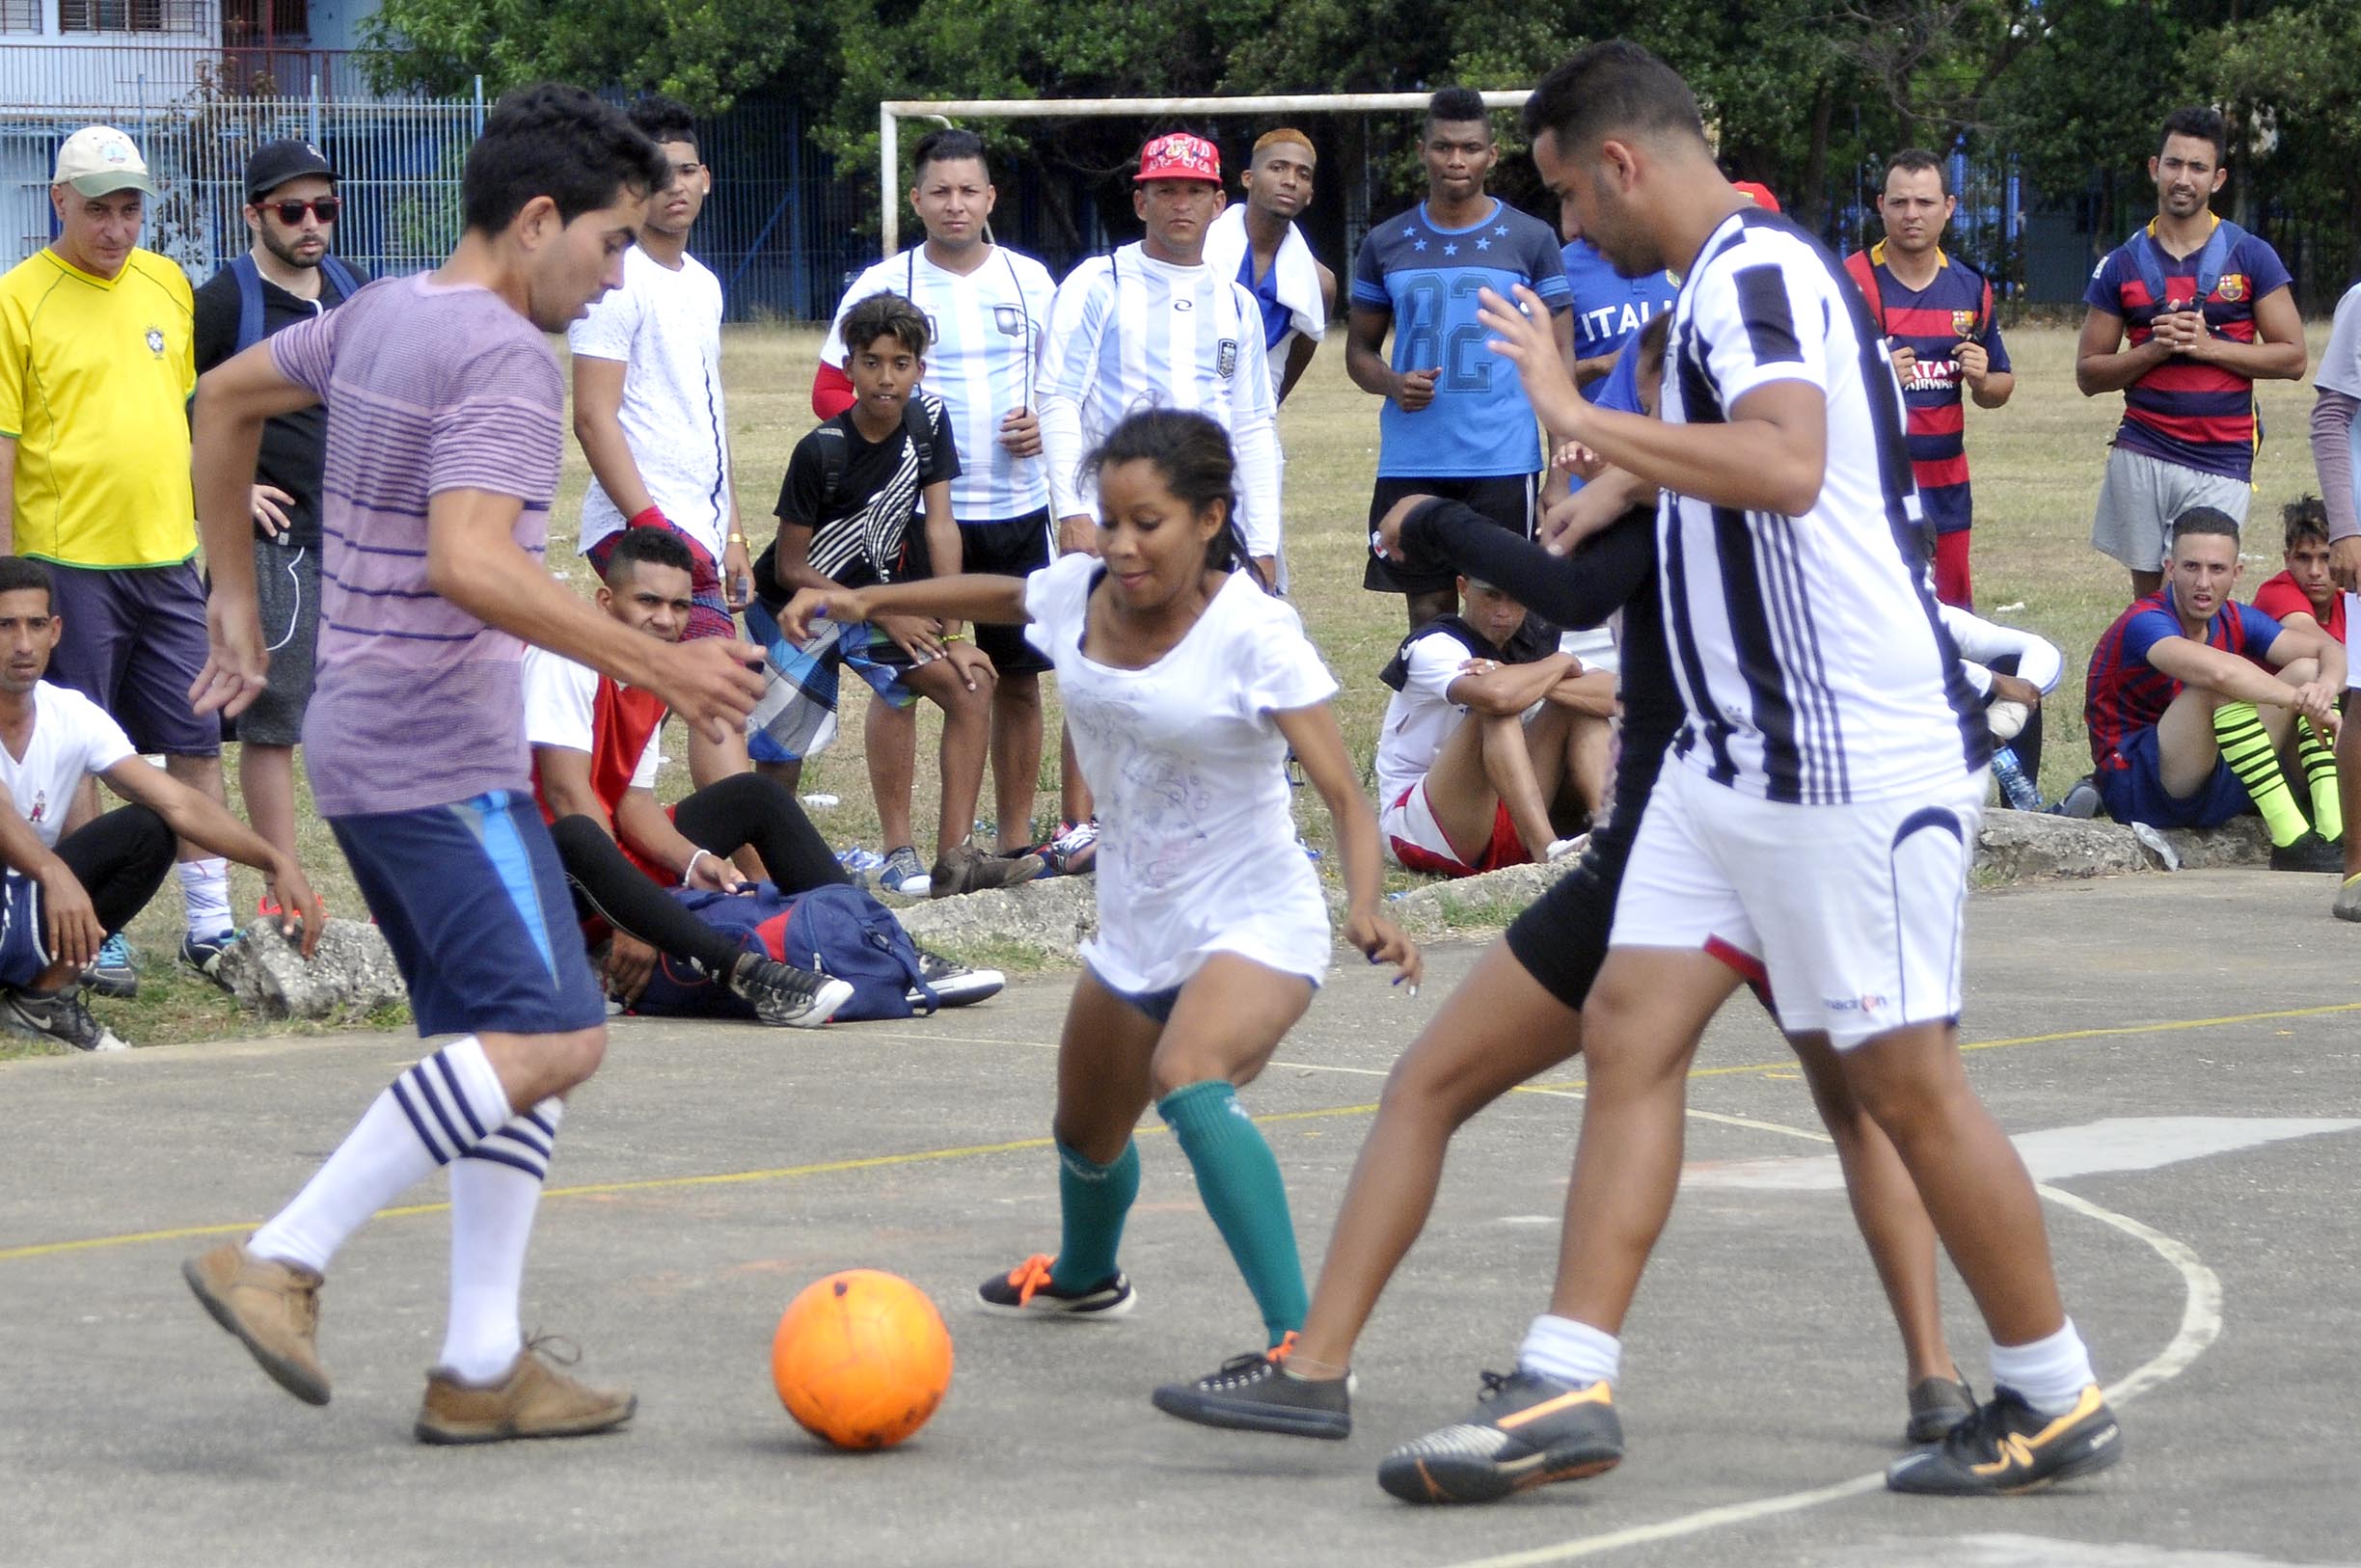 Campeonato Nacional de Fútbol Callejero en La Habana. Foto: José Raúl Rodríguez Robleda